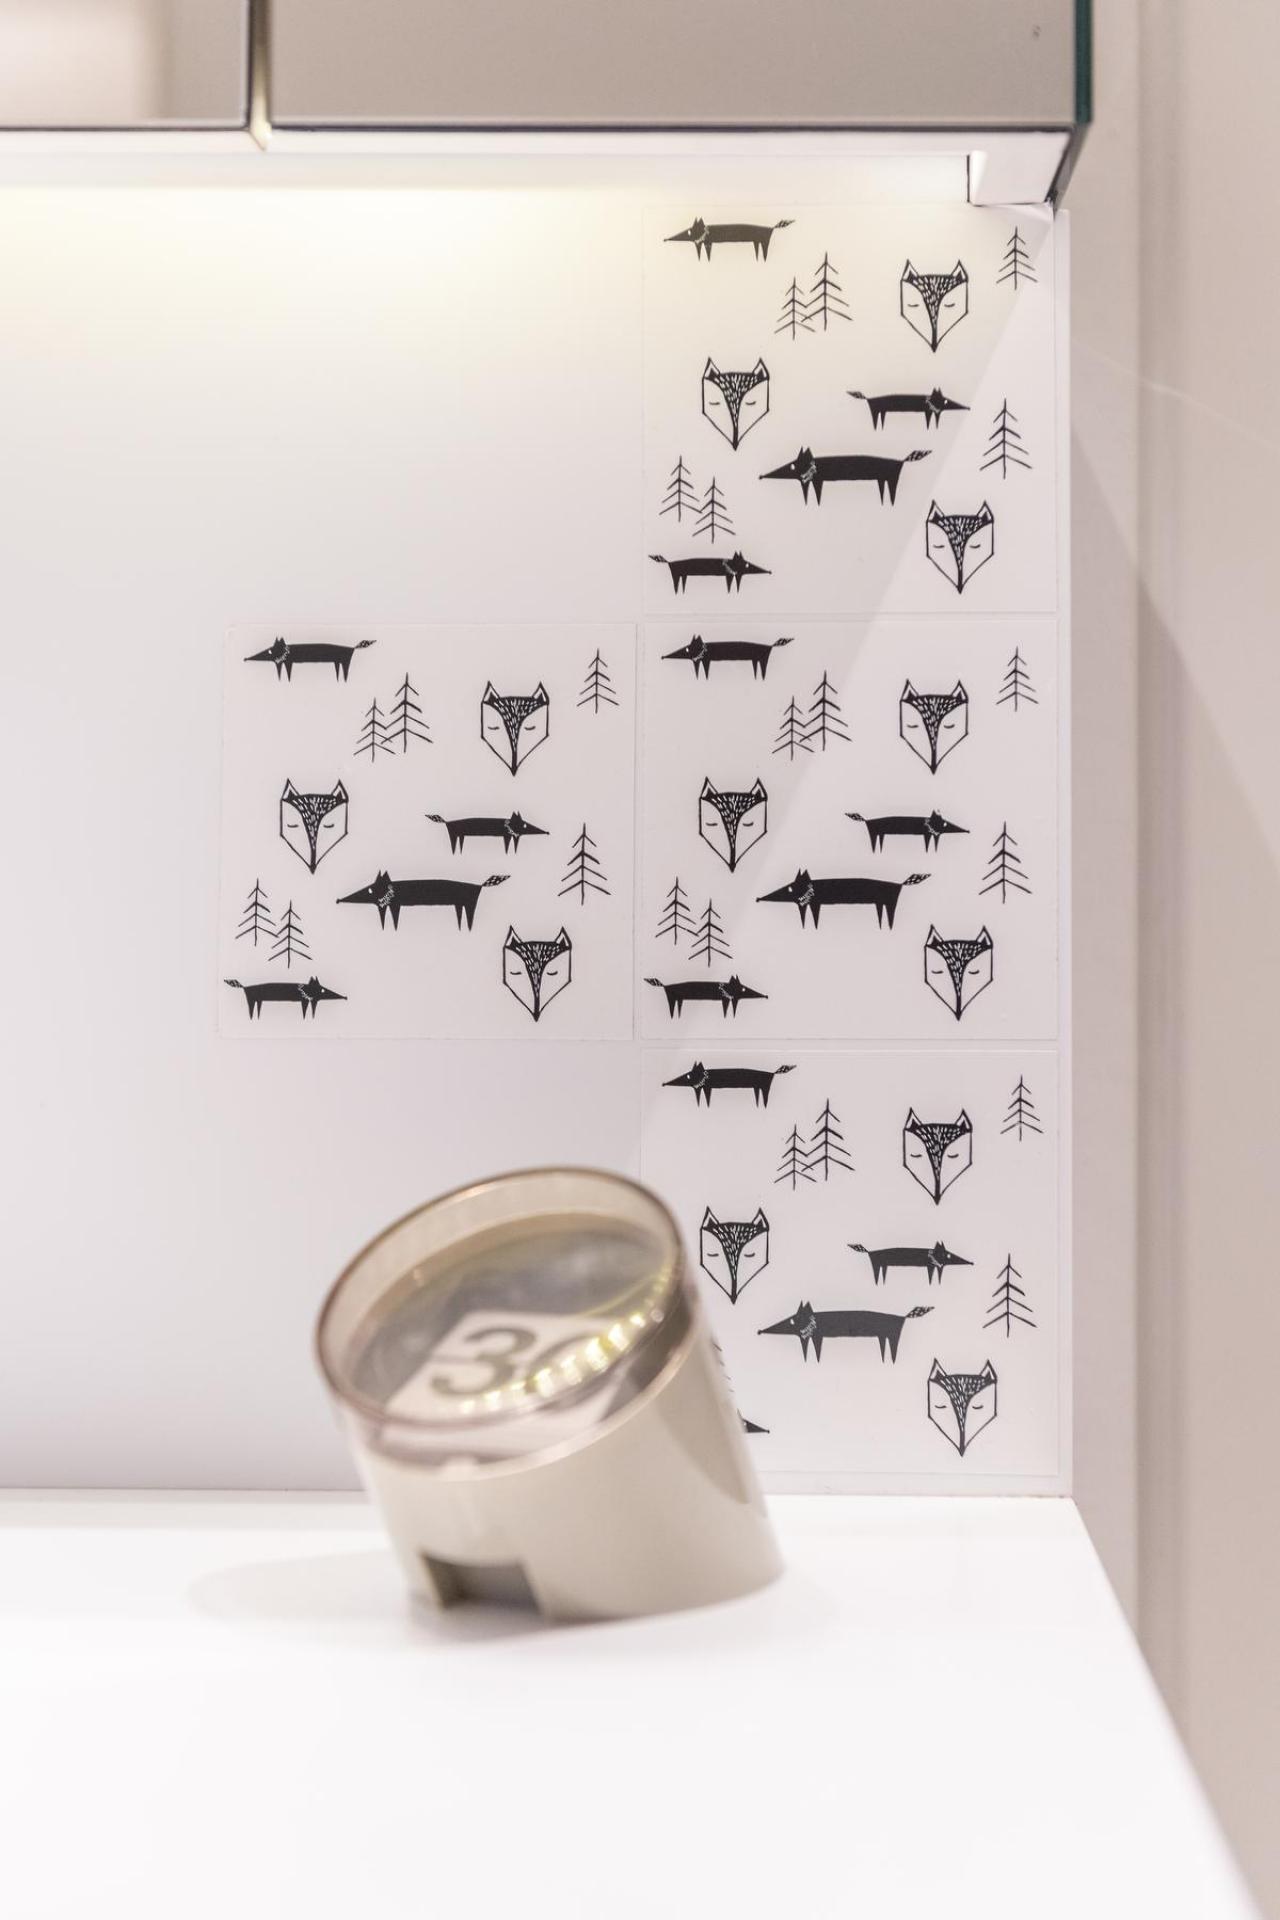 In de badkamer kwamen speelse tegeltjes met vosjes.© Pieter Clicteur